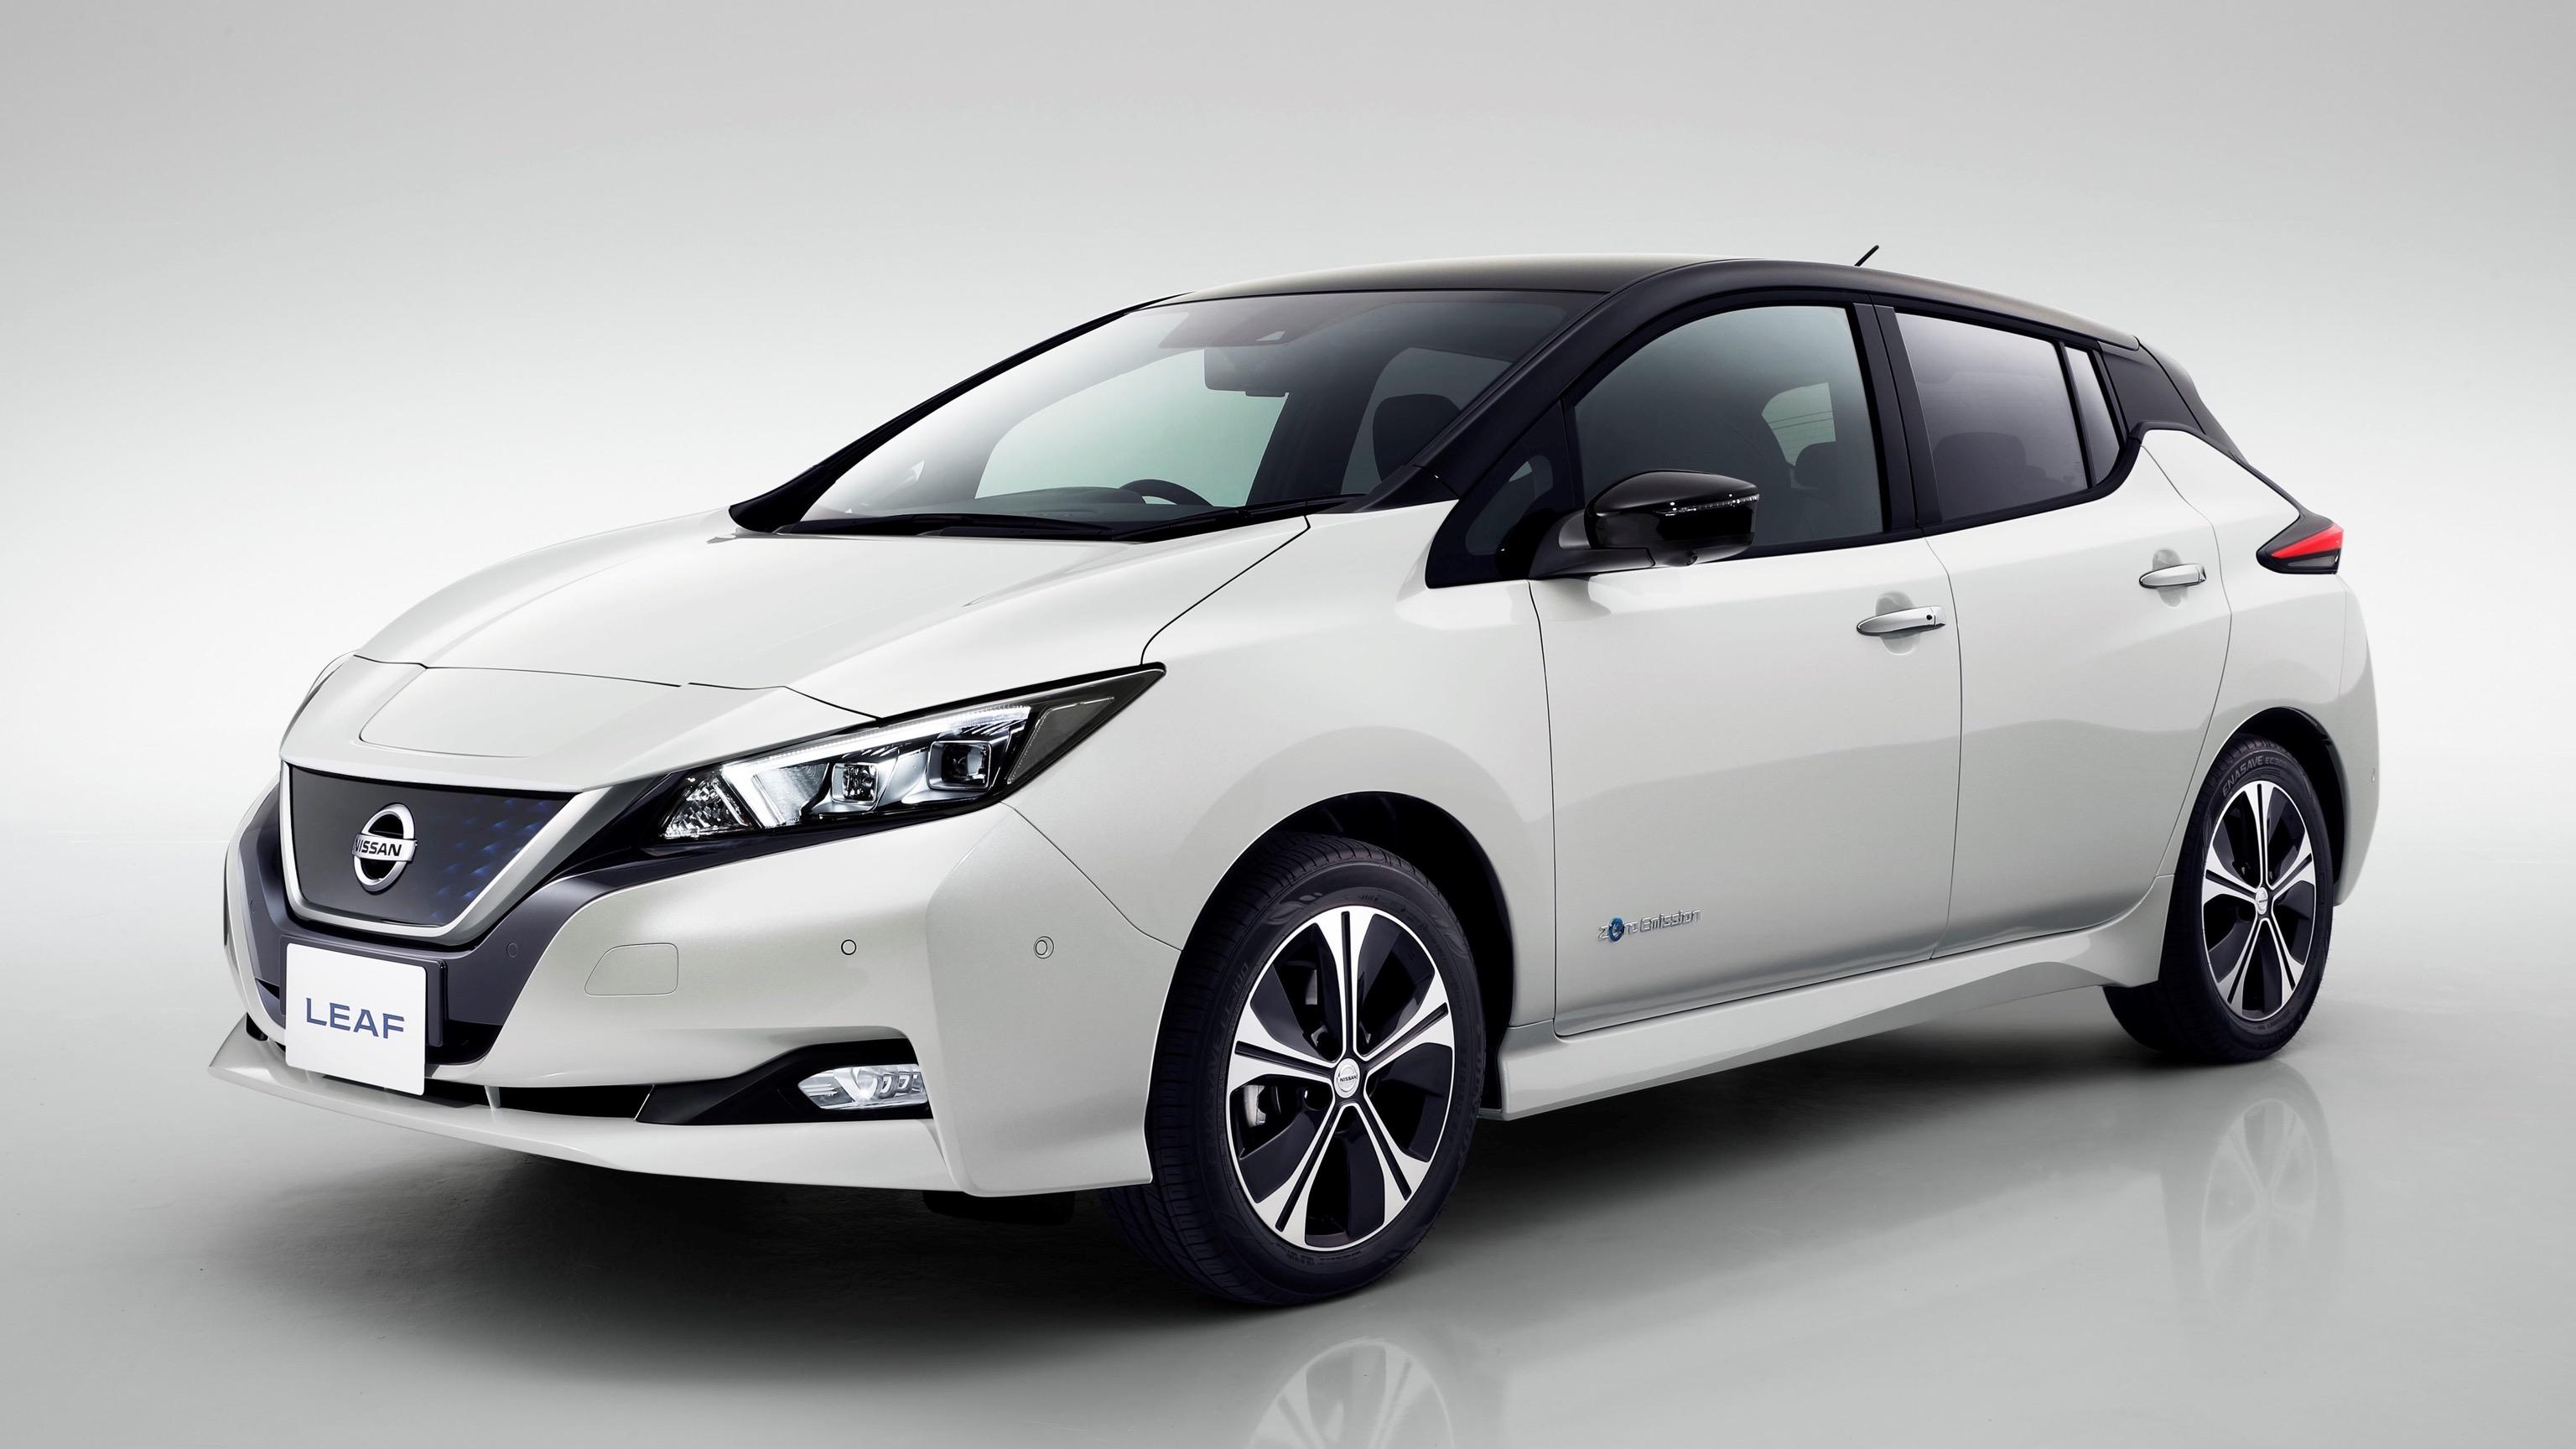 Nissan теперь будет выпускать электромобили только в Европе